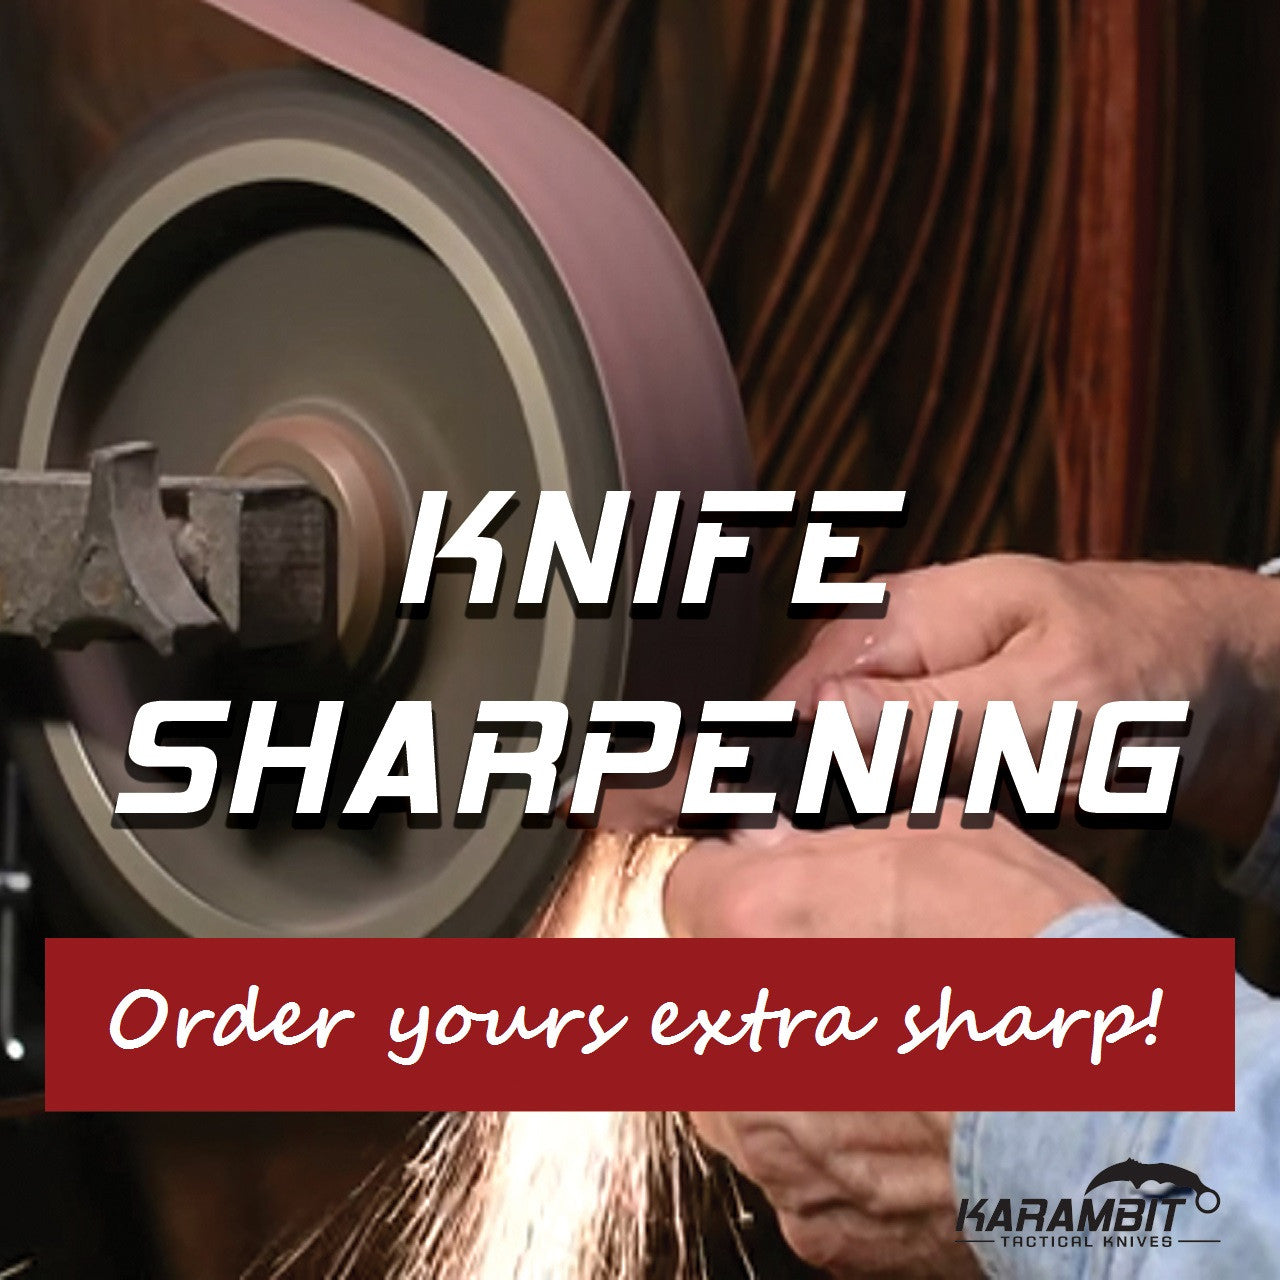 Professional Knife Sharpener by Sharper Image @